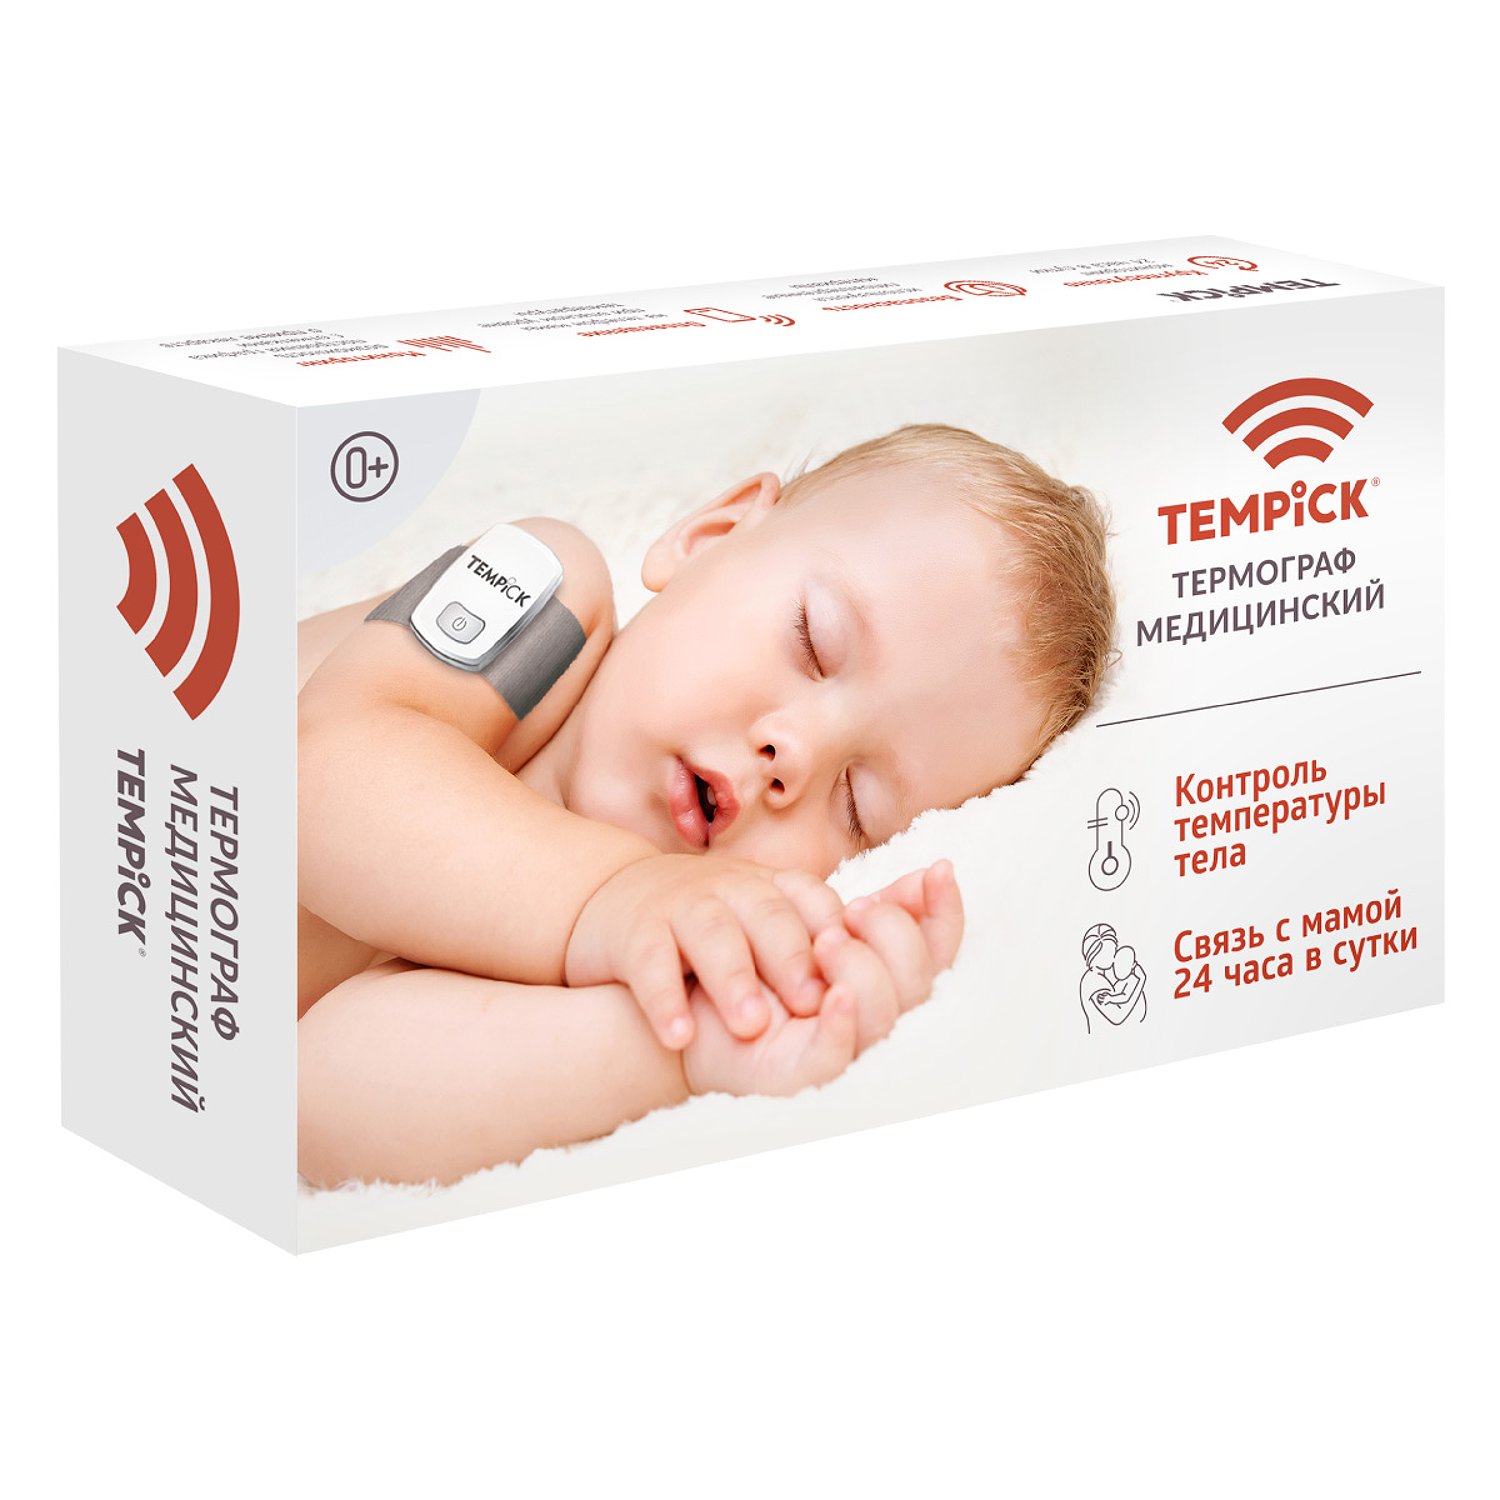 Термограф TEMPICK ЕЛАМЕД интеллектуальный для мониторинга температуры тела ребенка - фото 1